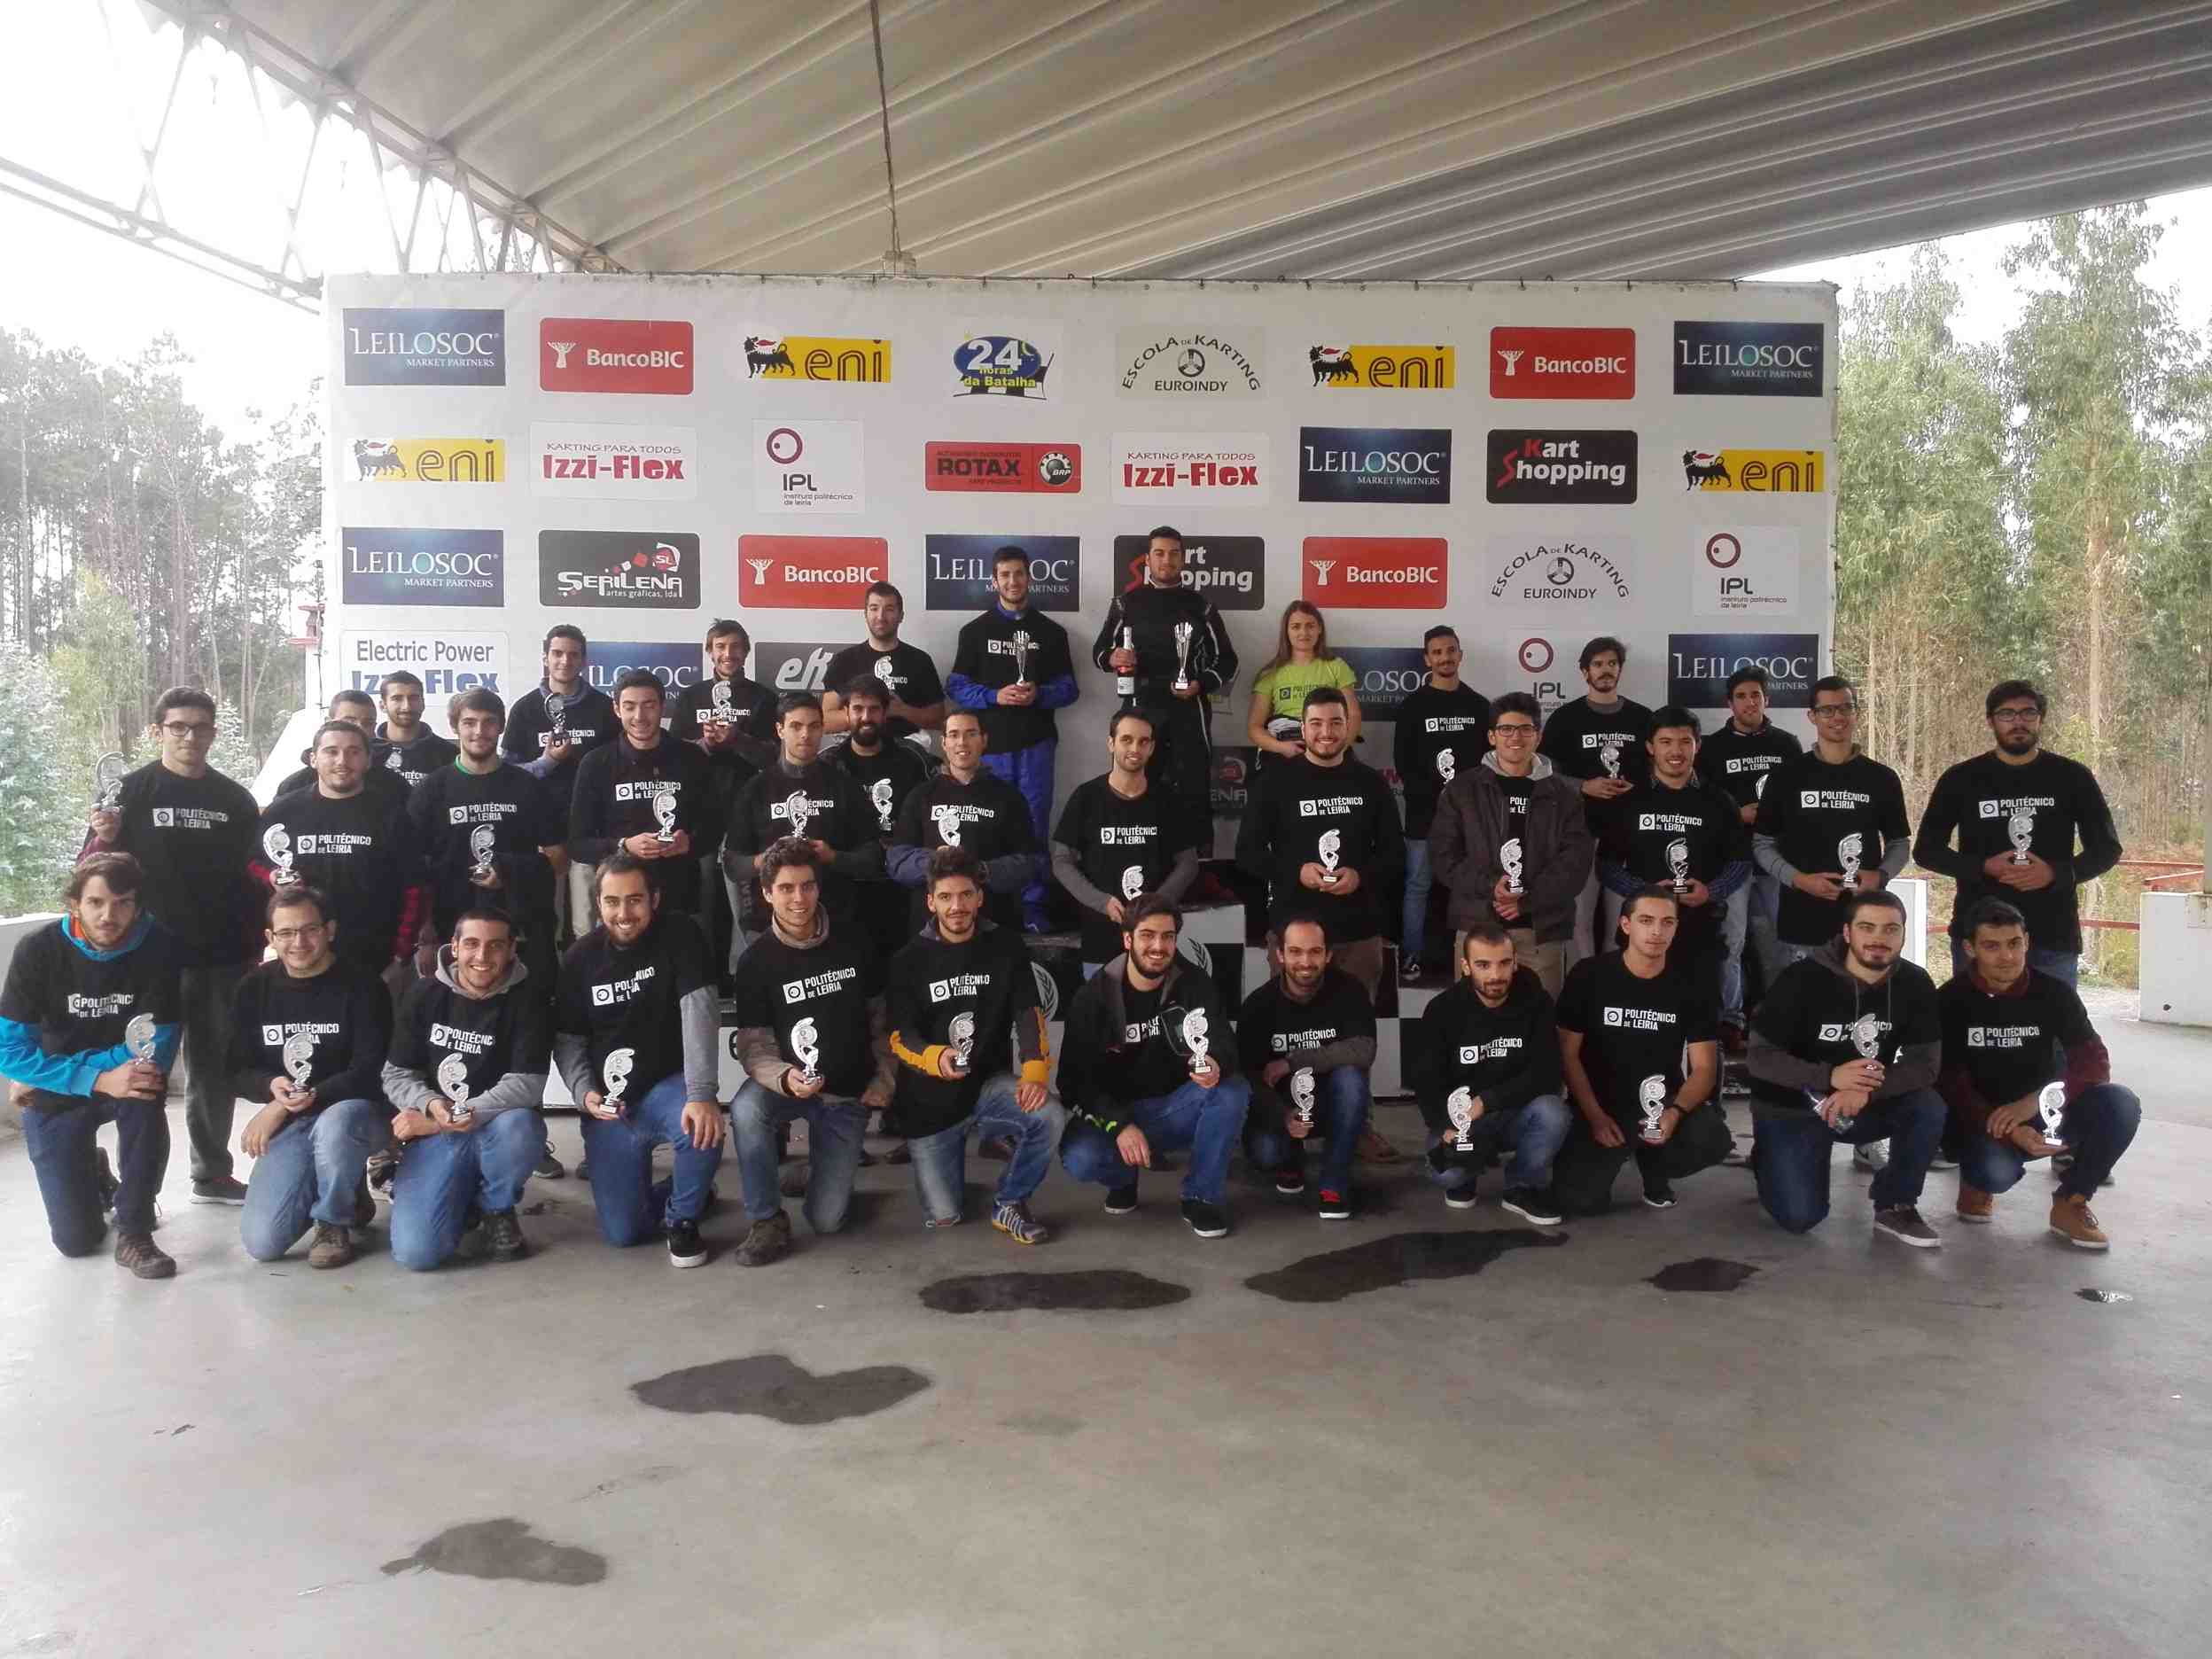 VIII Troféu de Karting do Politécnico de Leiria51